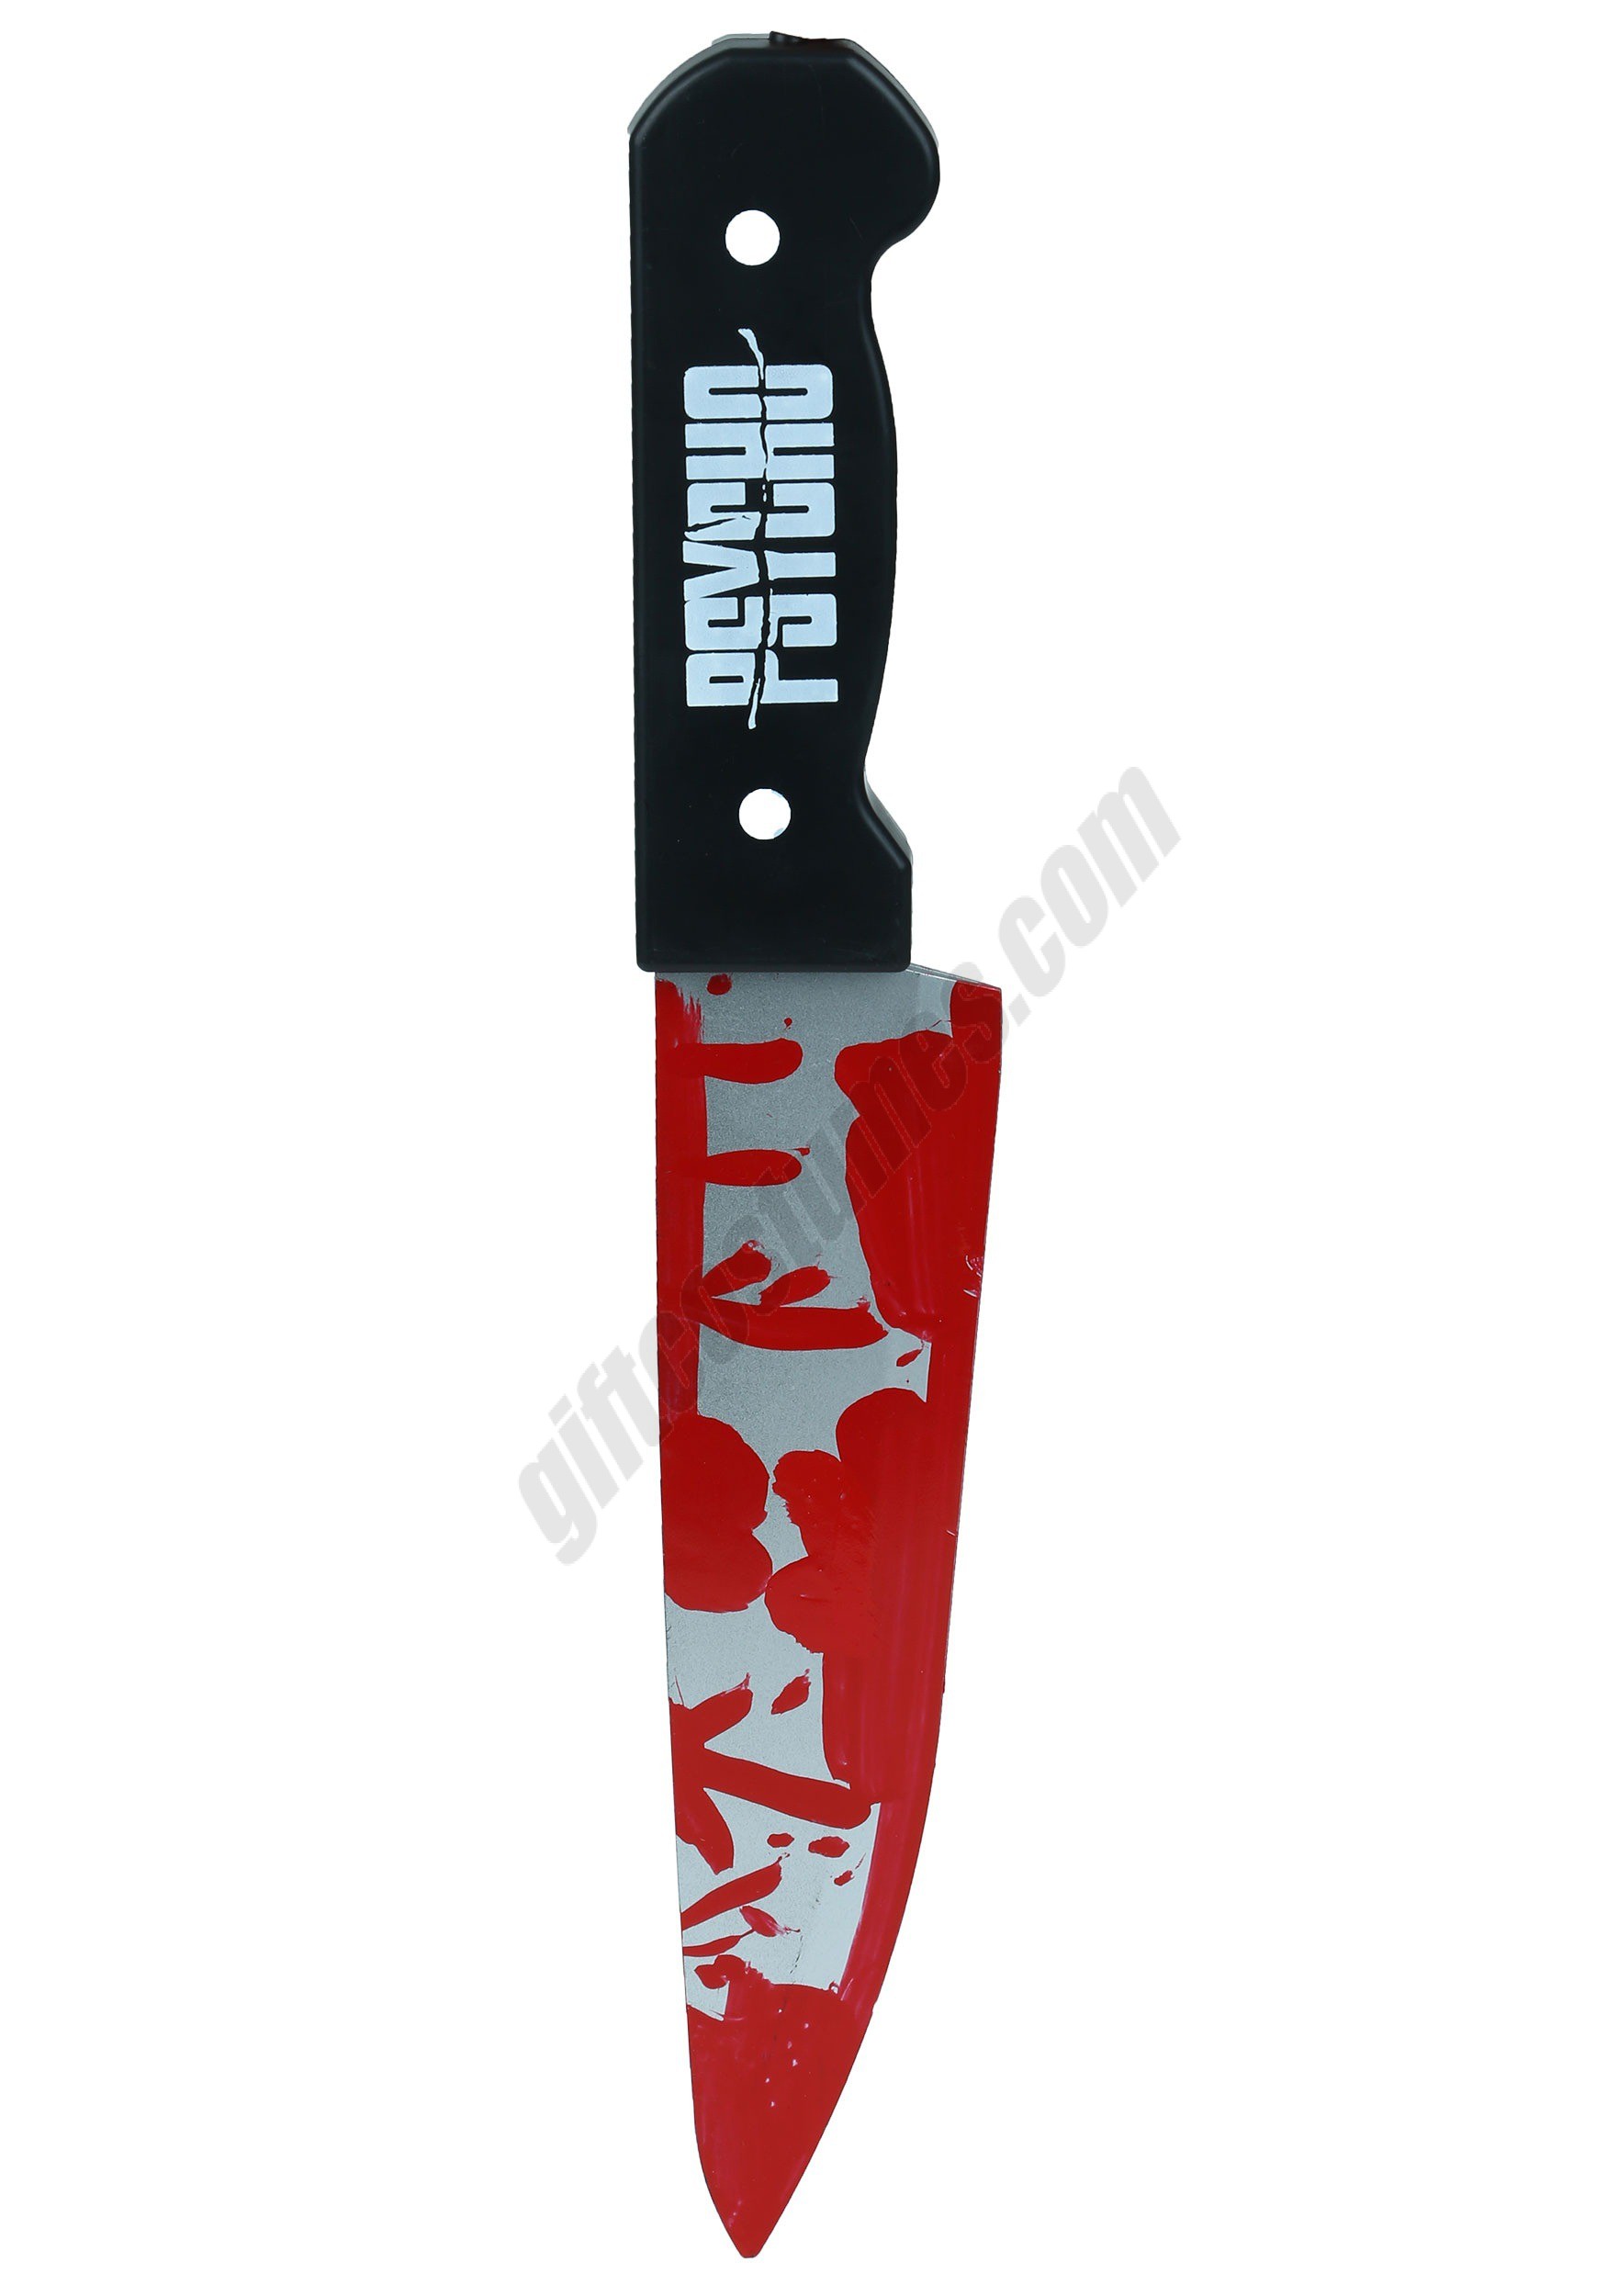 Psycho Knife Promotions - Psycho Knife Promotions